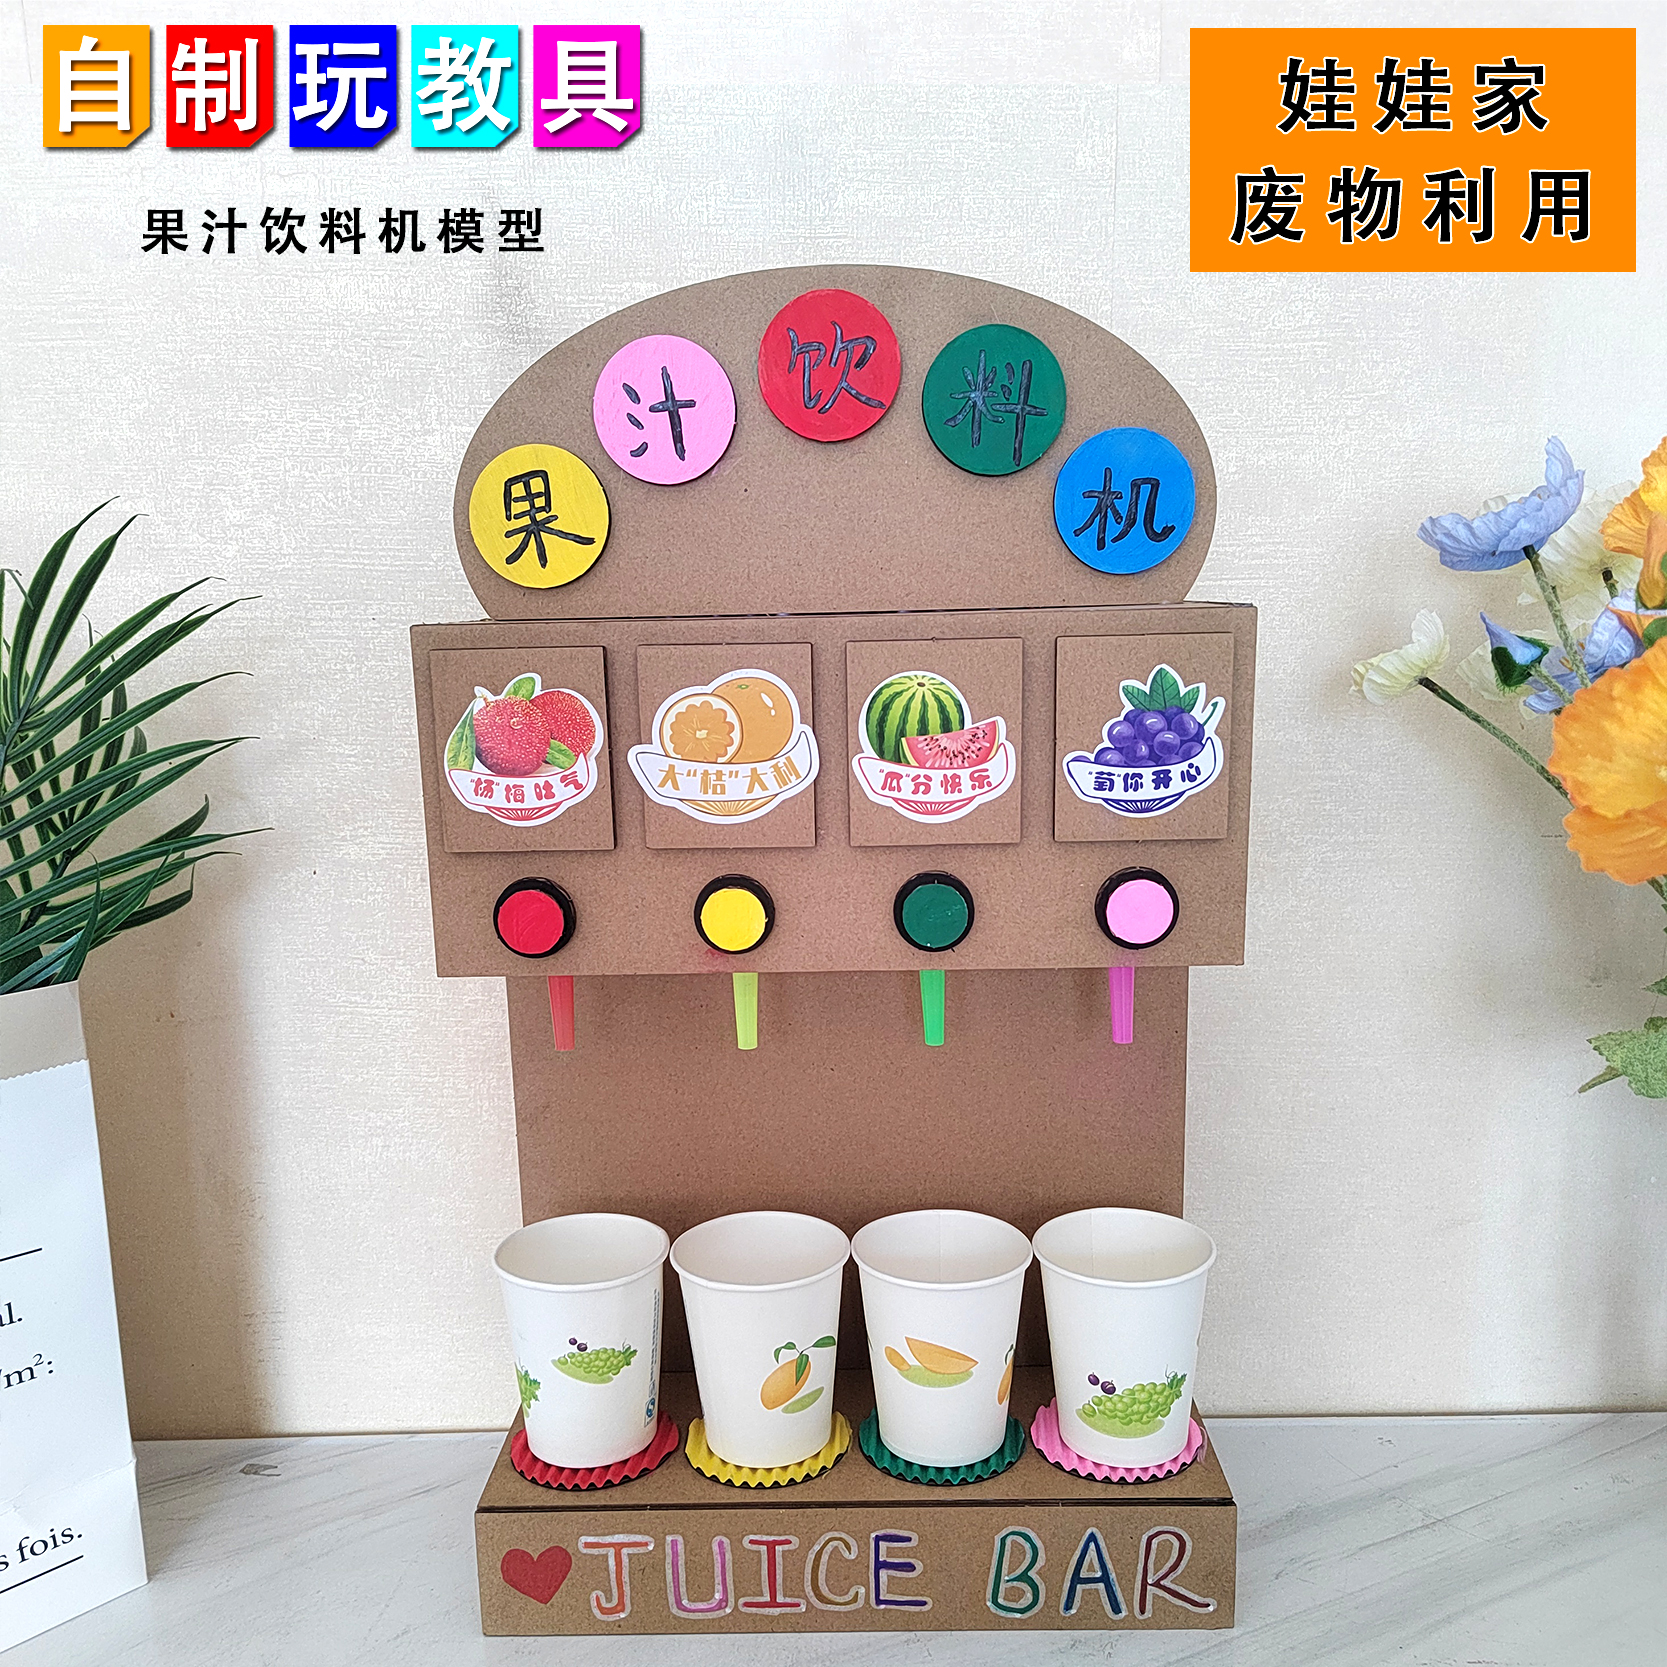 娃娃家自制果汁饮料机模型 幼儿园diy手工纸板制作环保玩具饮水机